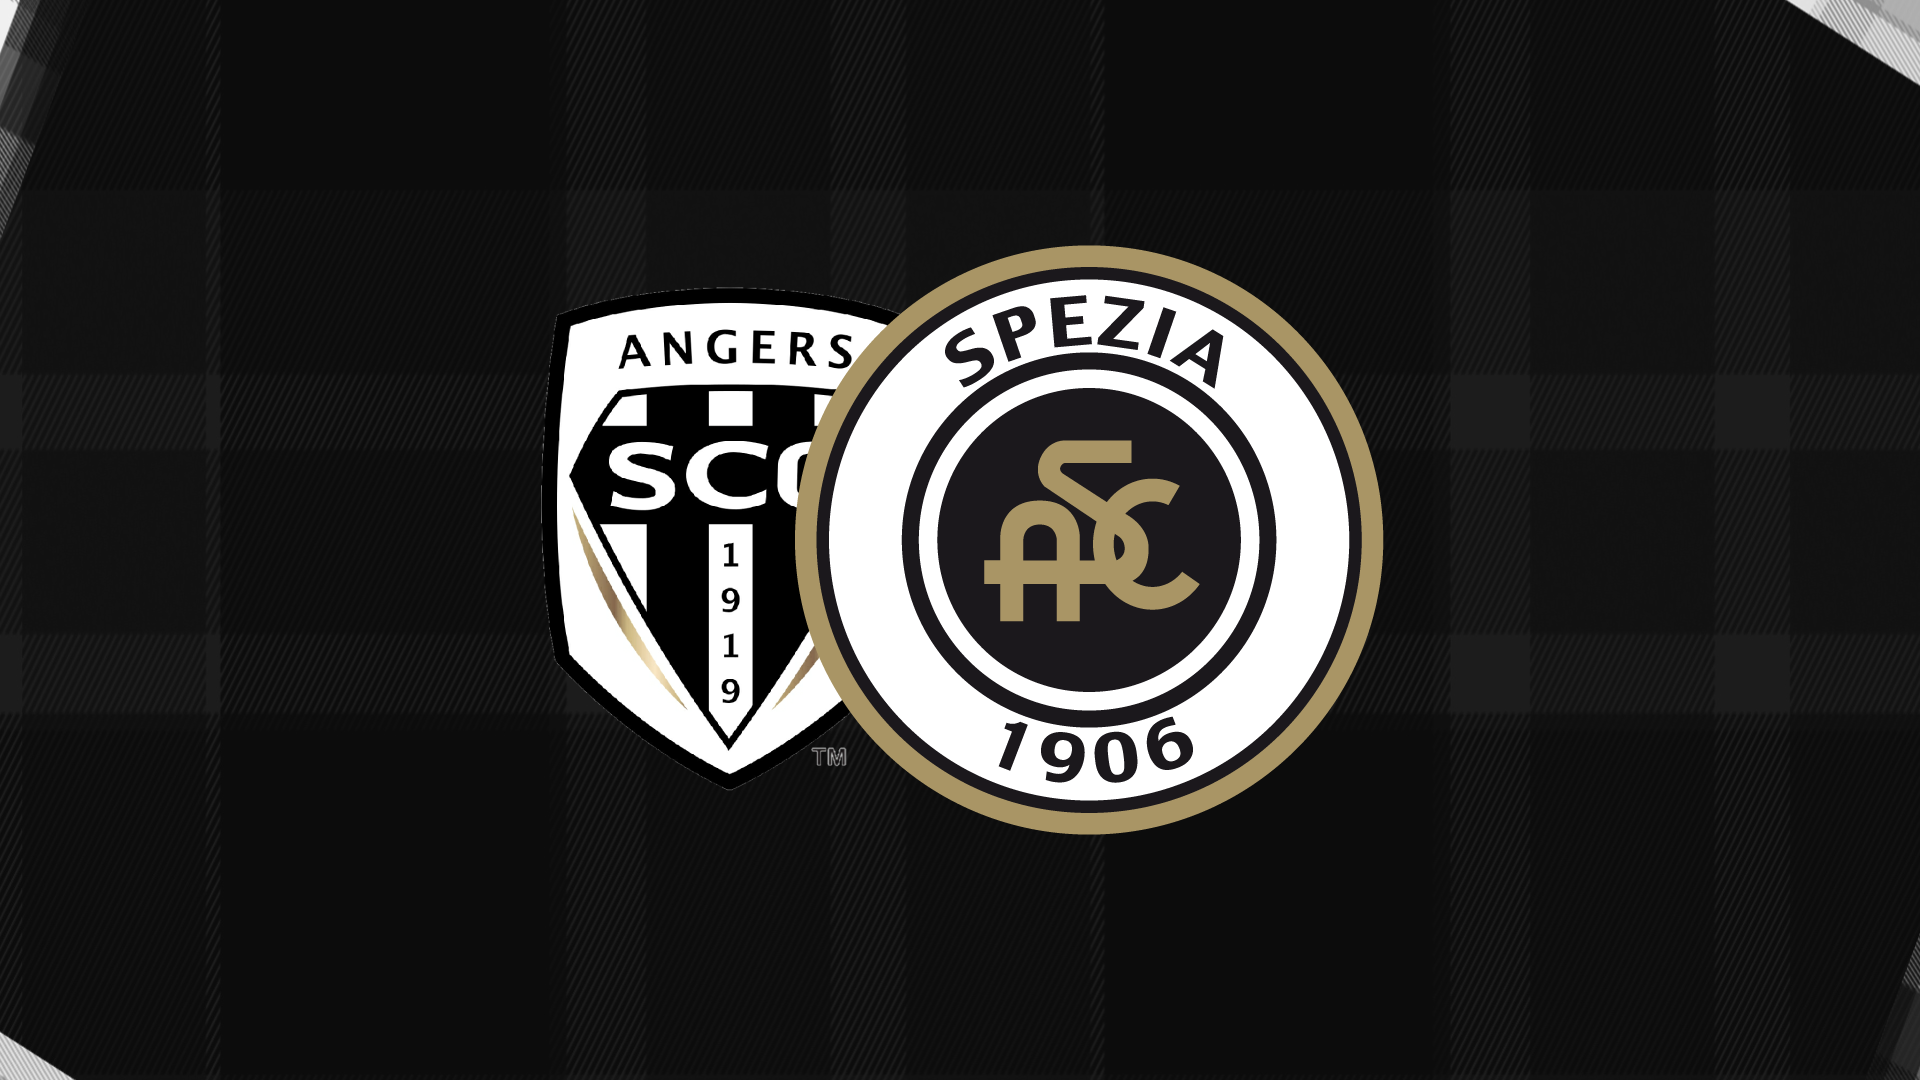 Angers-Spezia 2-2